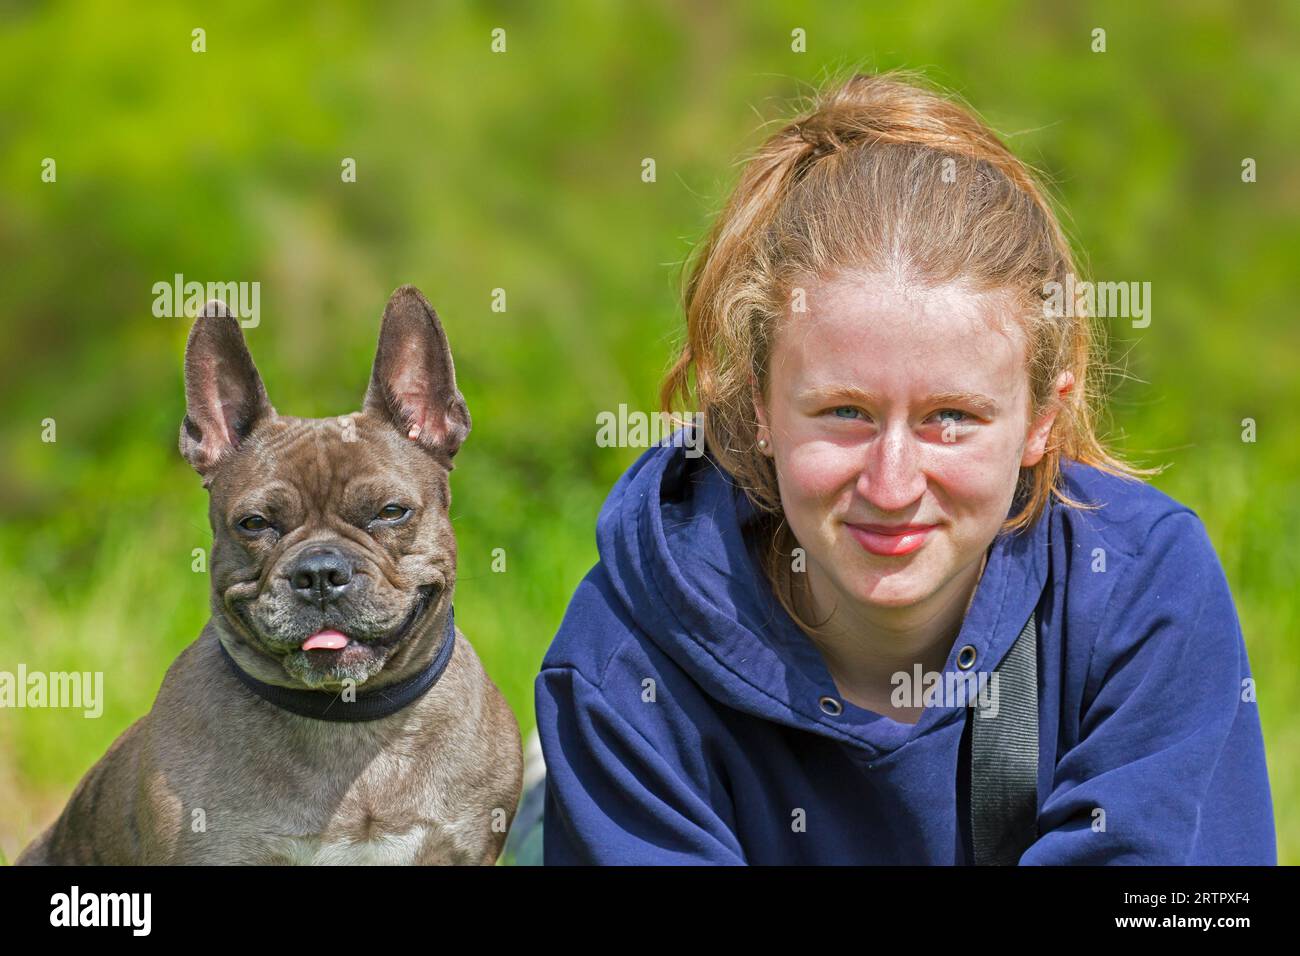 Fille posant avec le bulldog français Lilas / Isabella frenchie / Bouledogue Français, race de chien de compagnie français ou chien jouet dans le jardin Banque D'Images